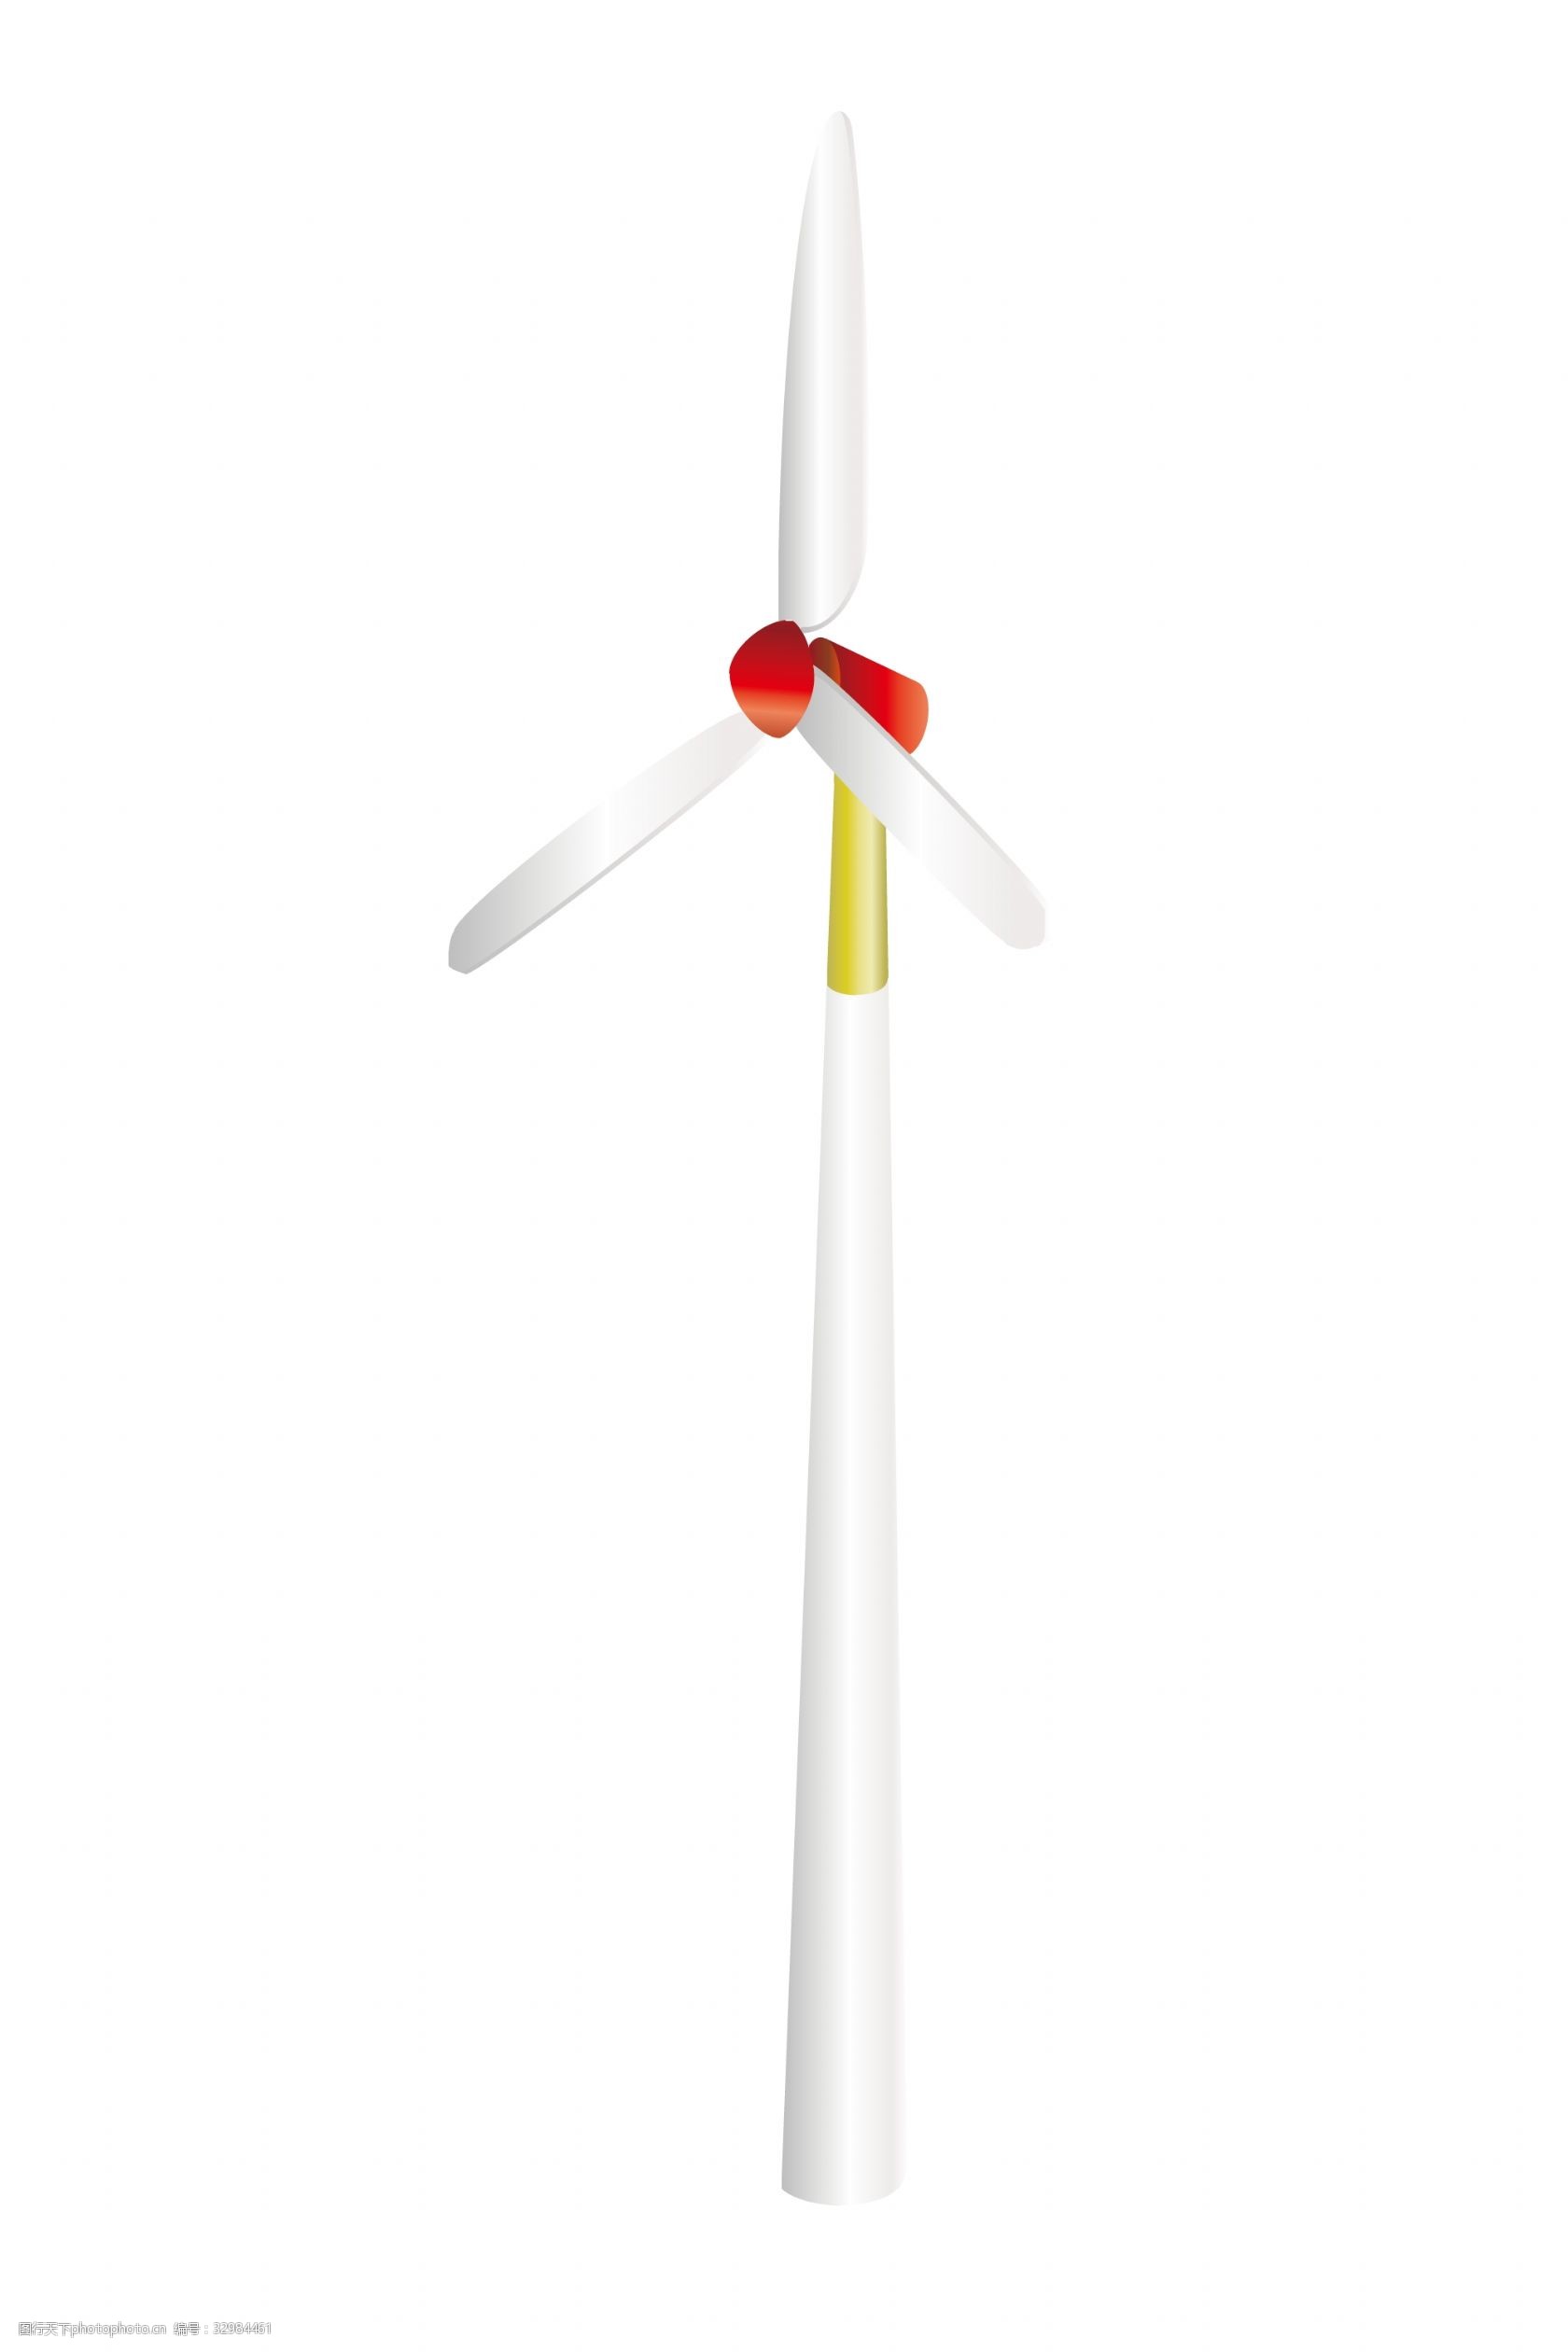 关键词:风力发电风车插画 黄色的桅杆 卡通插画 风车插画 扇叶插画